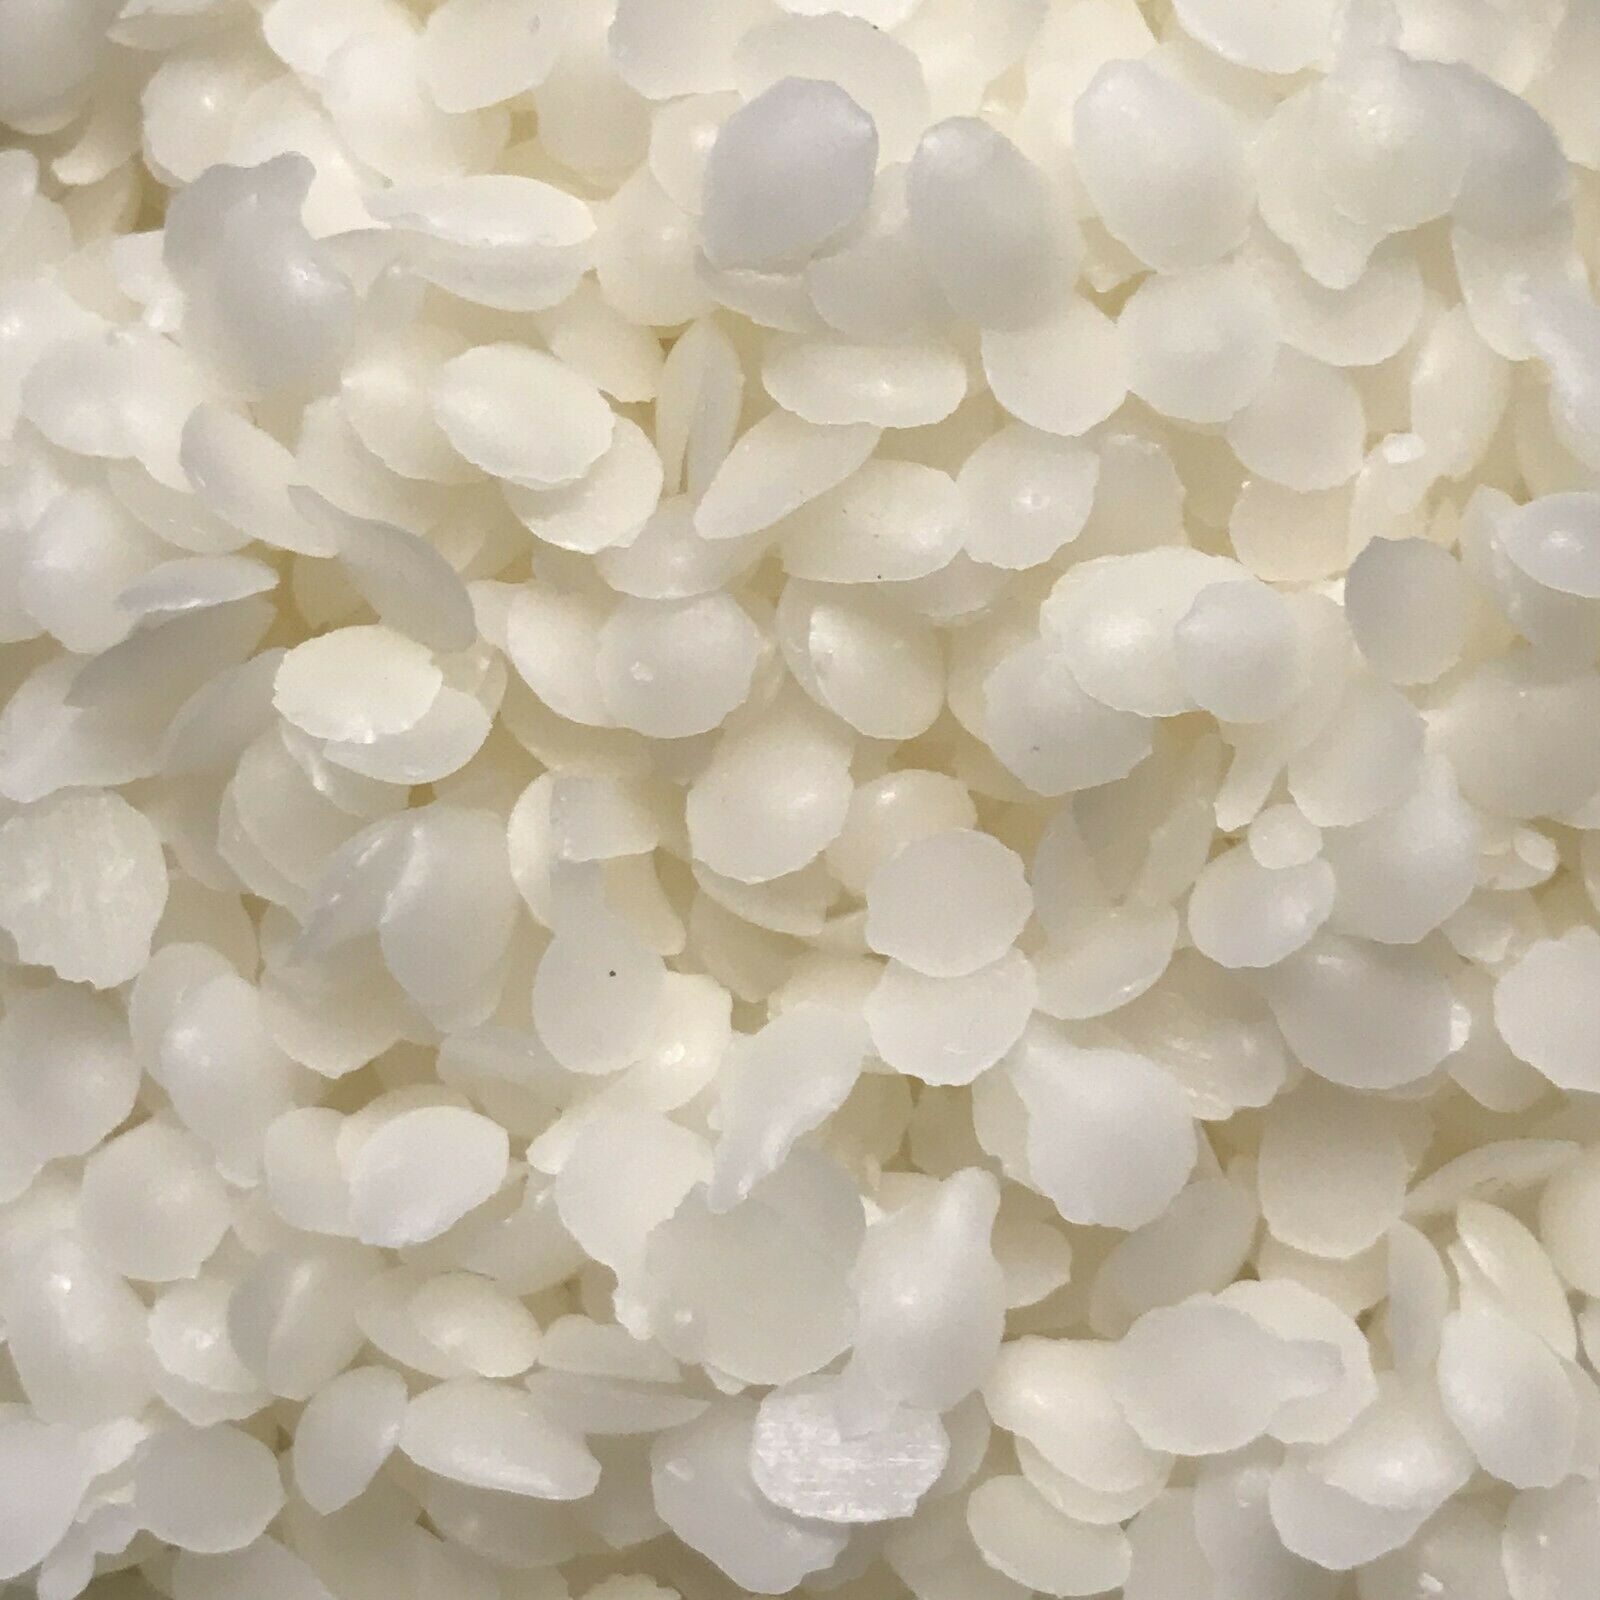 White Beeswax Pellets - Bulk Pharmaceutical Grade Prills